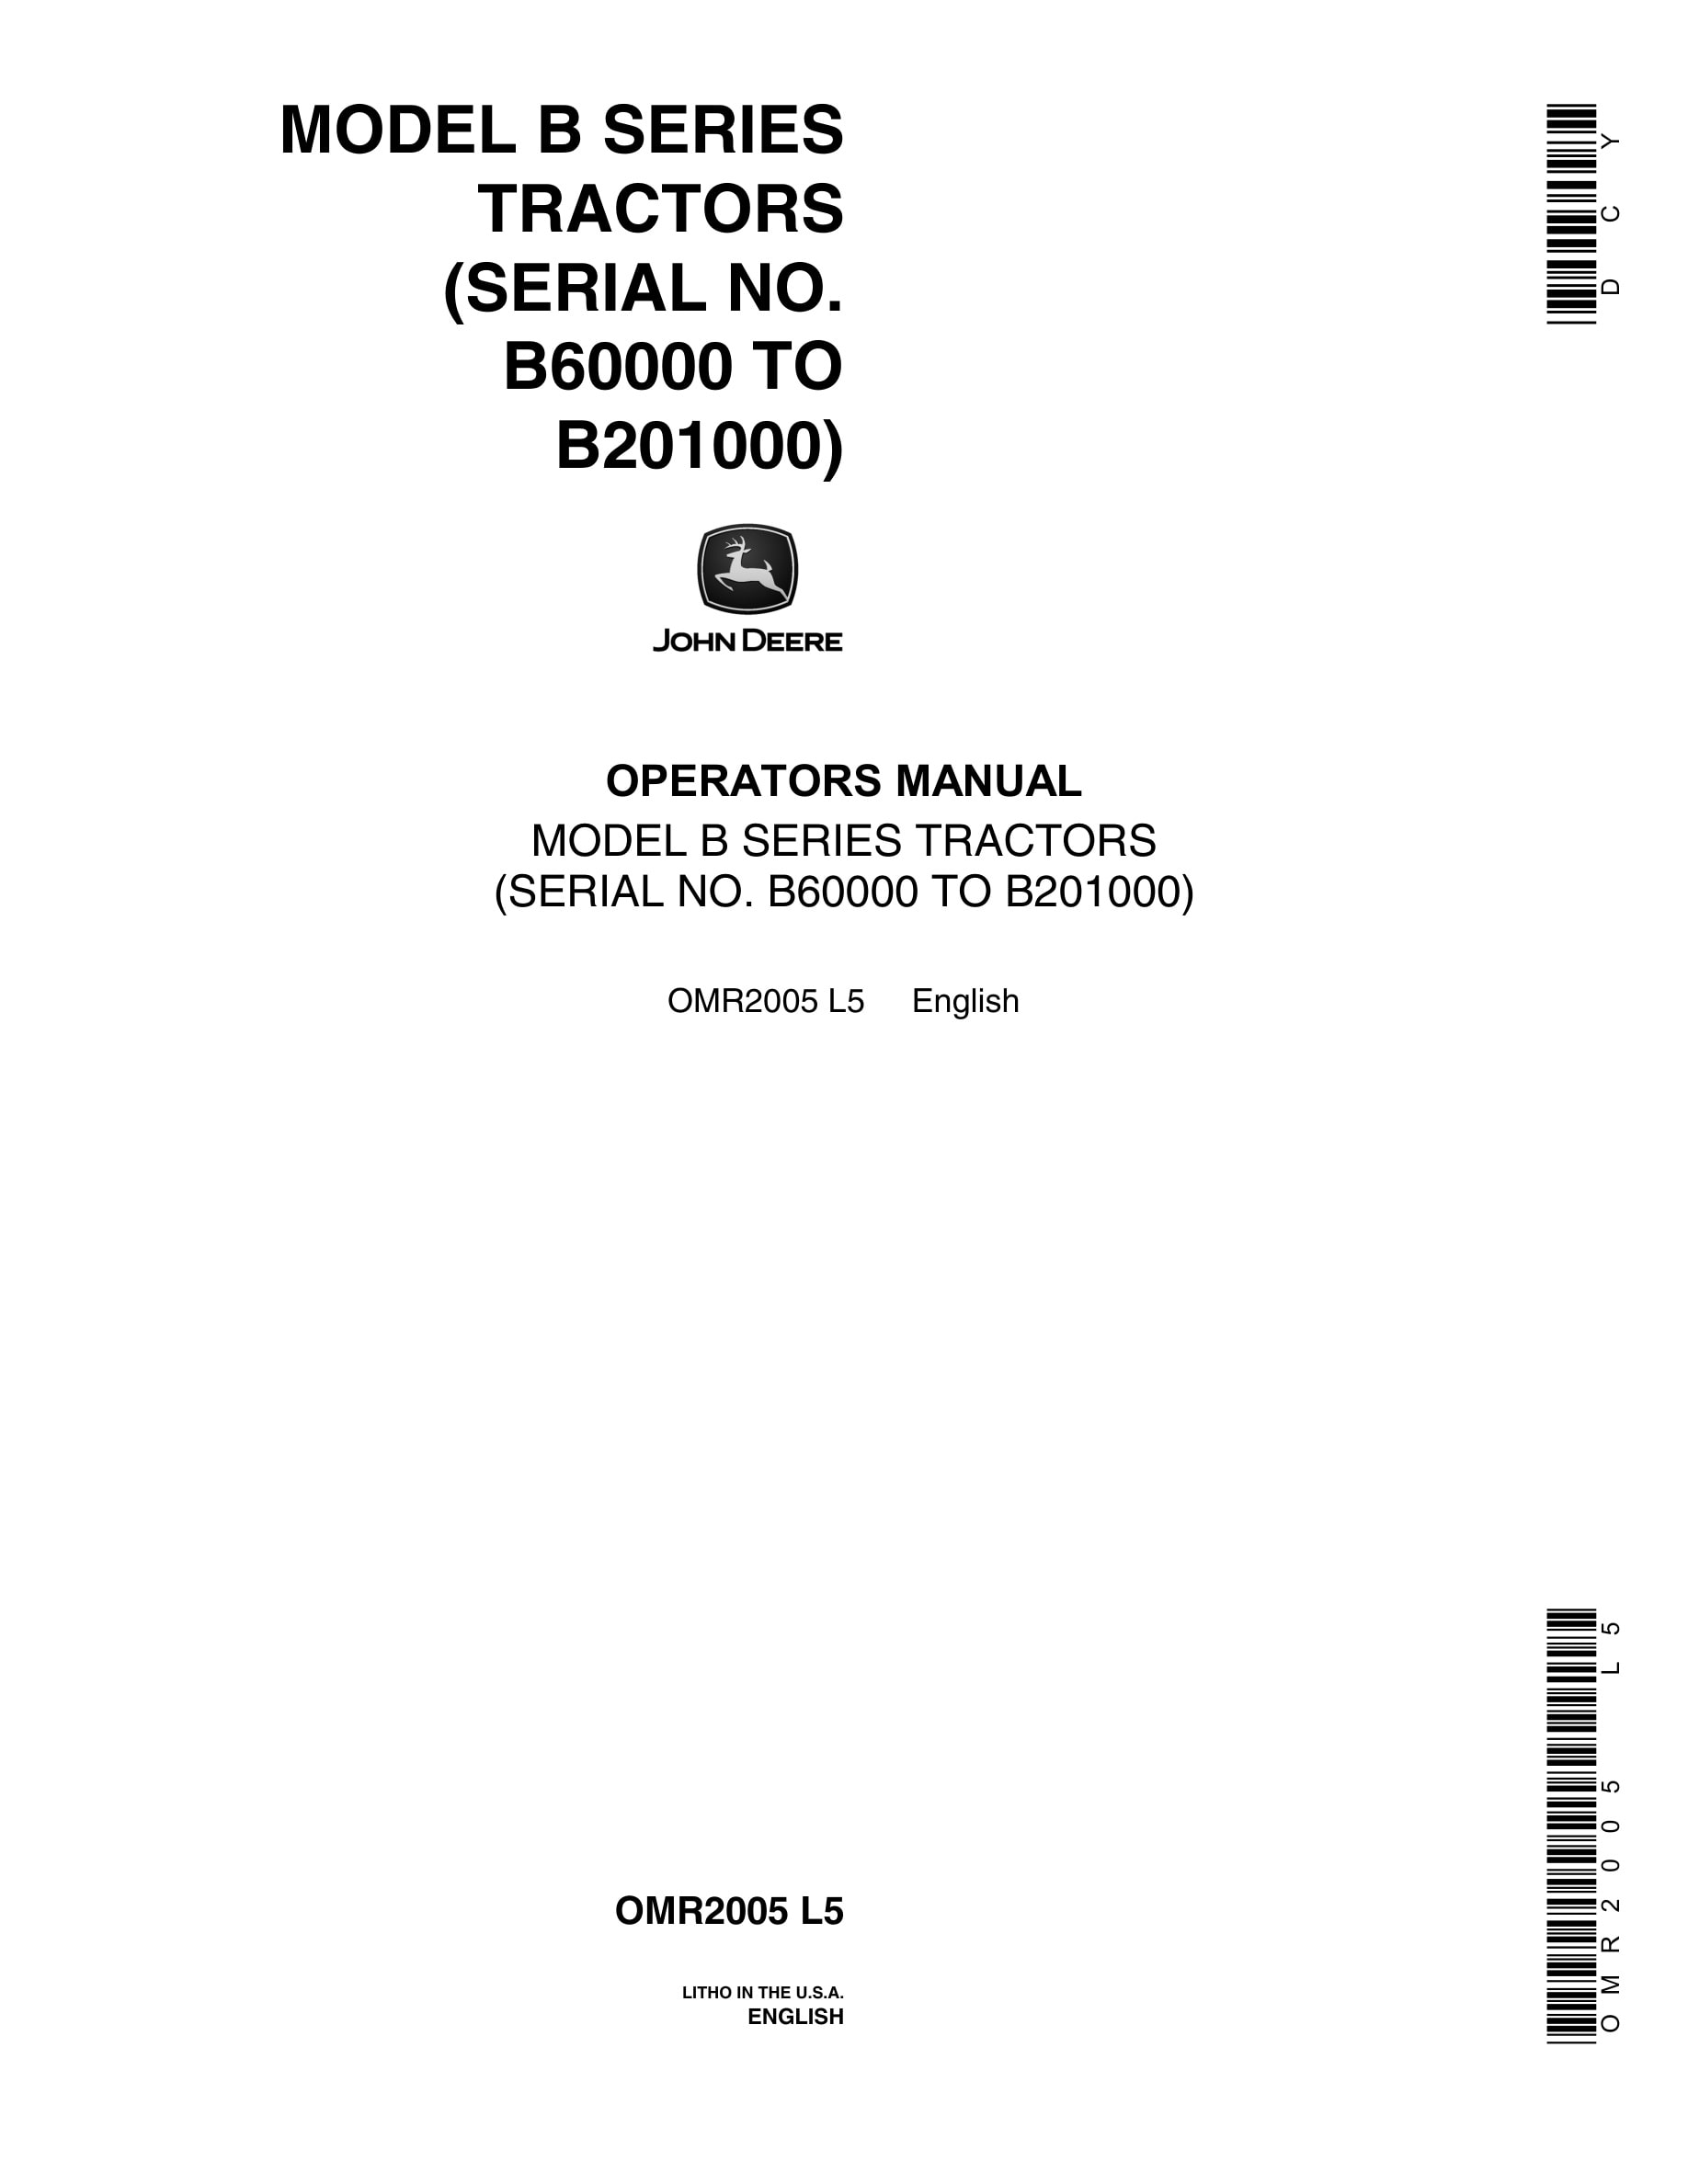 John Deere Model B Tractor Operator Manual OMR2005-1